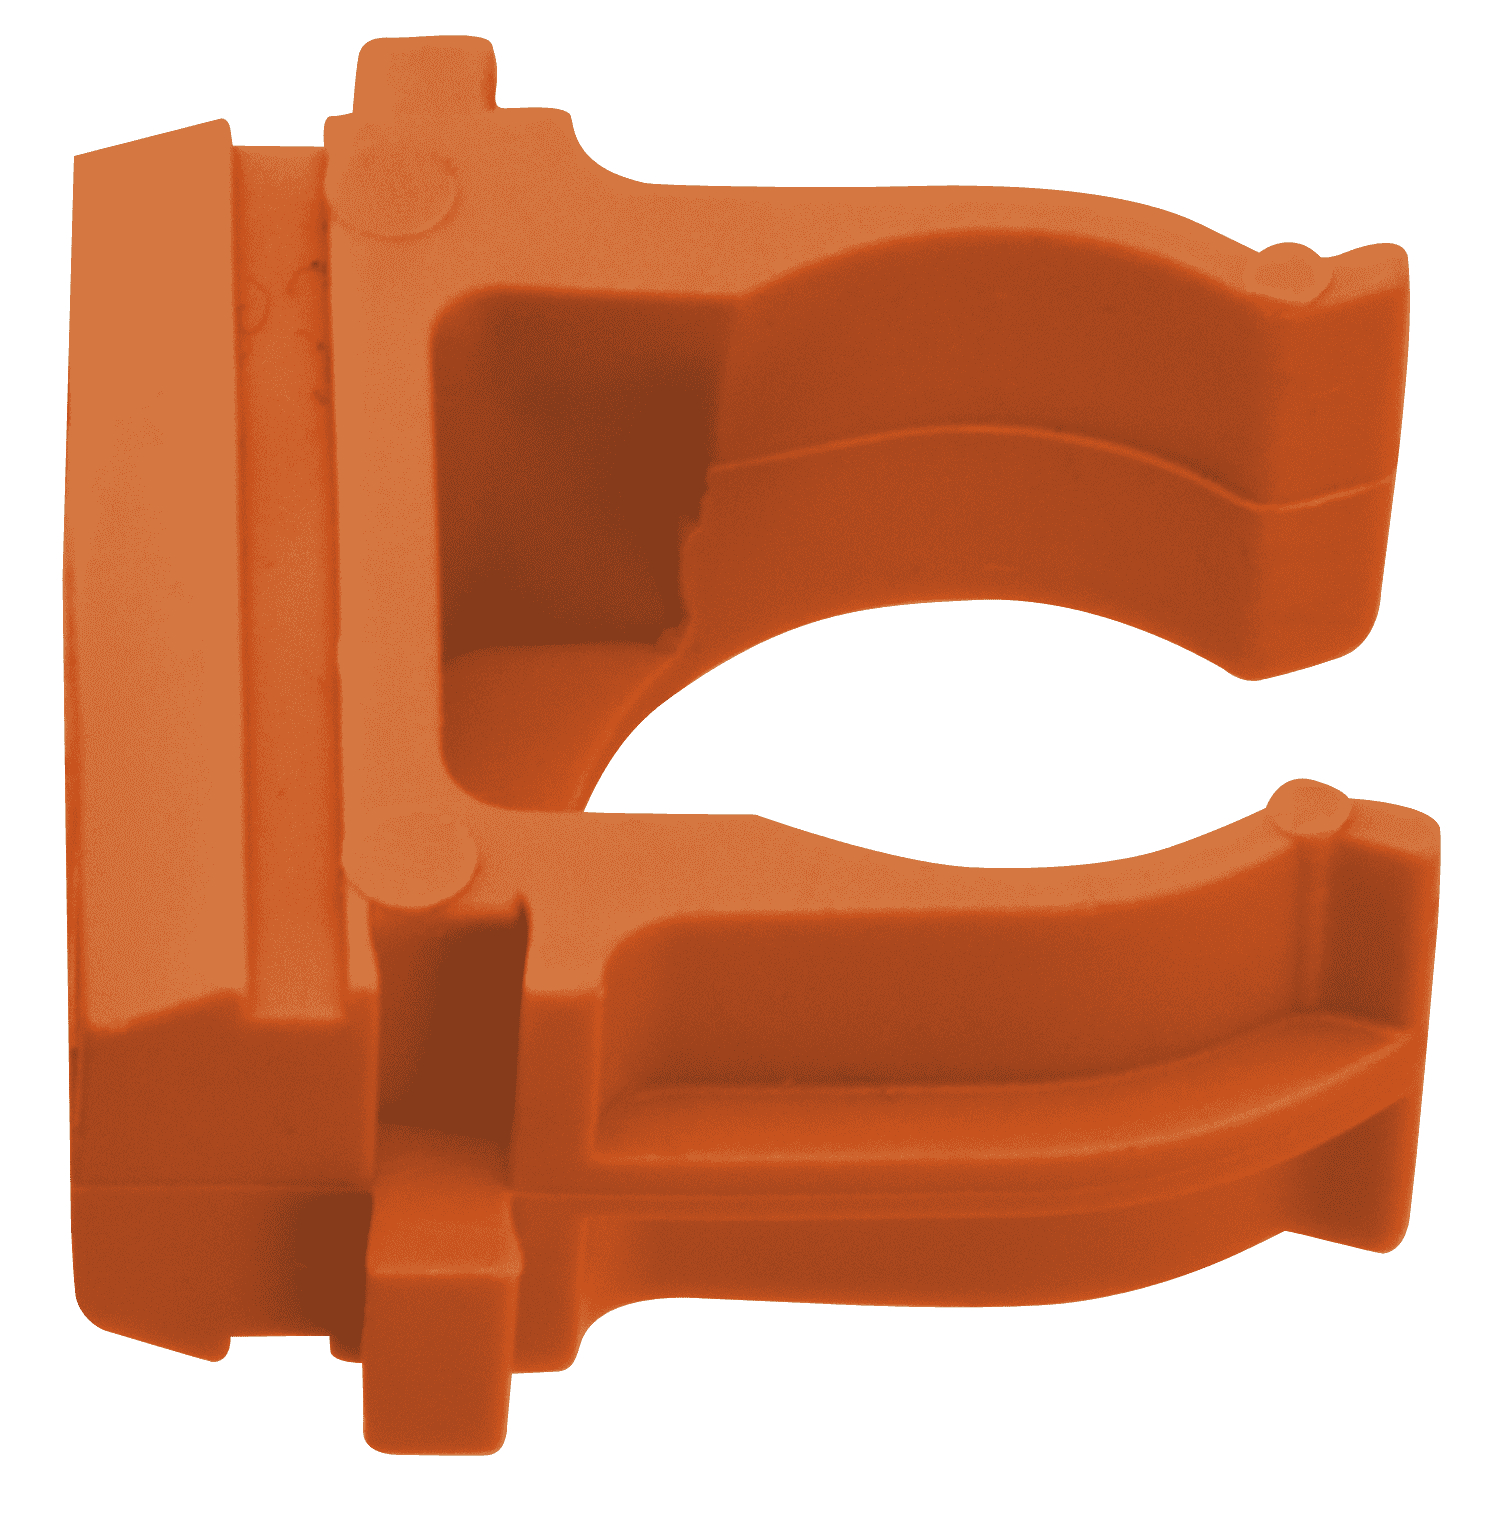  крепеж-клипса для трубы 16 мм оранжевая 